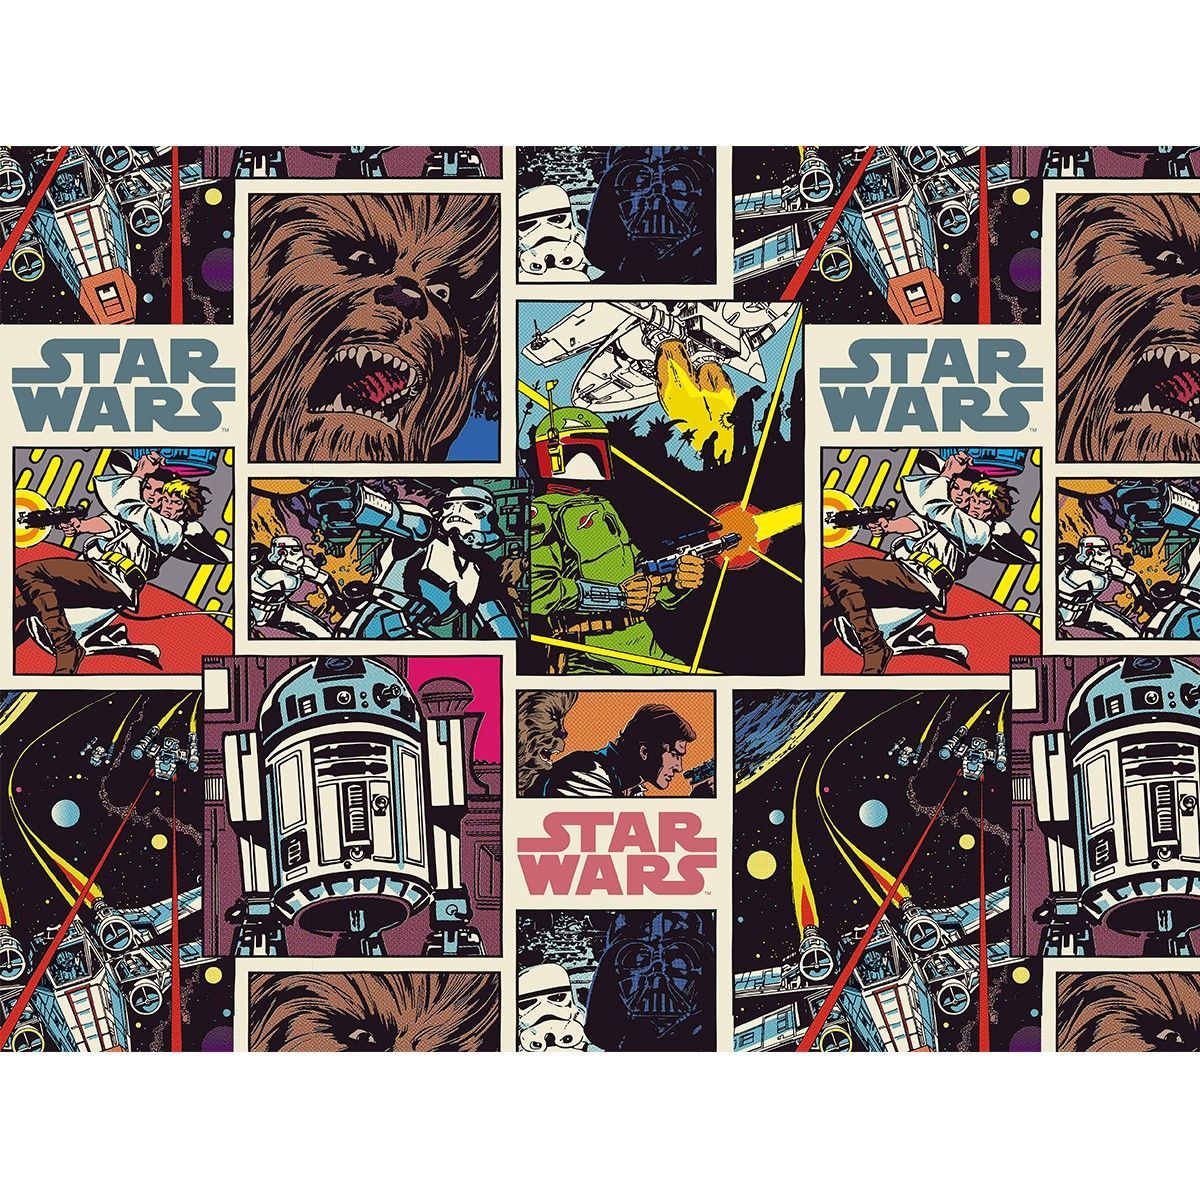 Star Wars Comic Book Wallpaper x 270cm. Star wars comic books, Fabric stars, Star wars comics